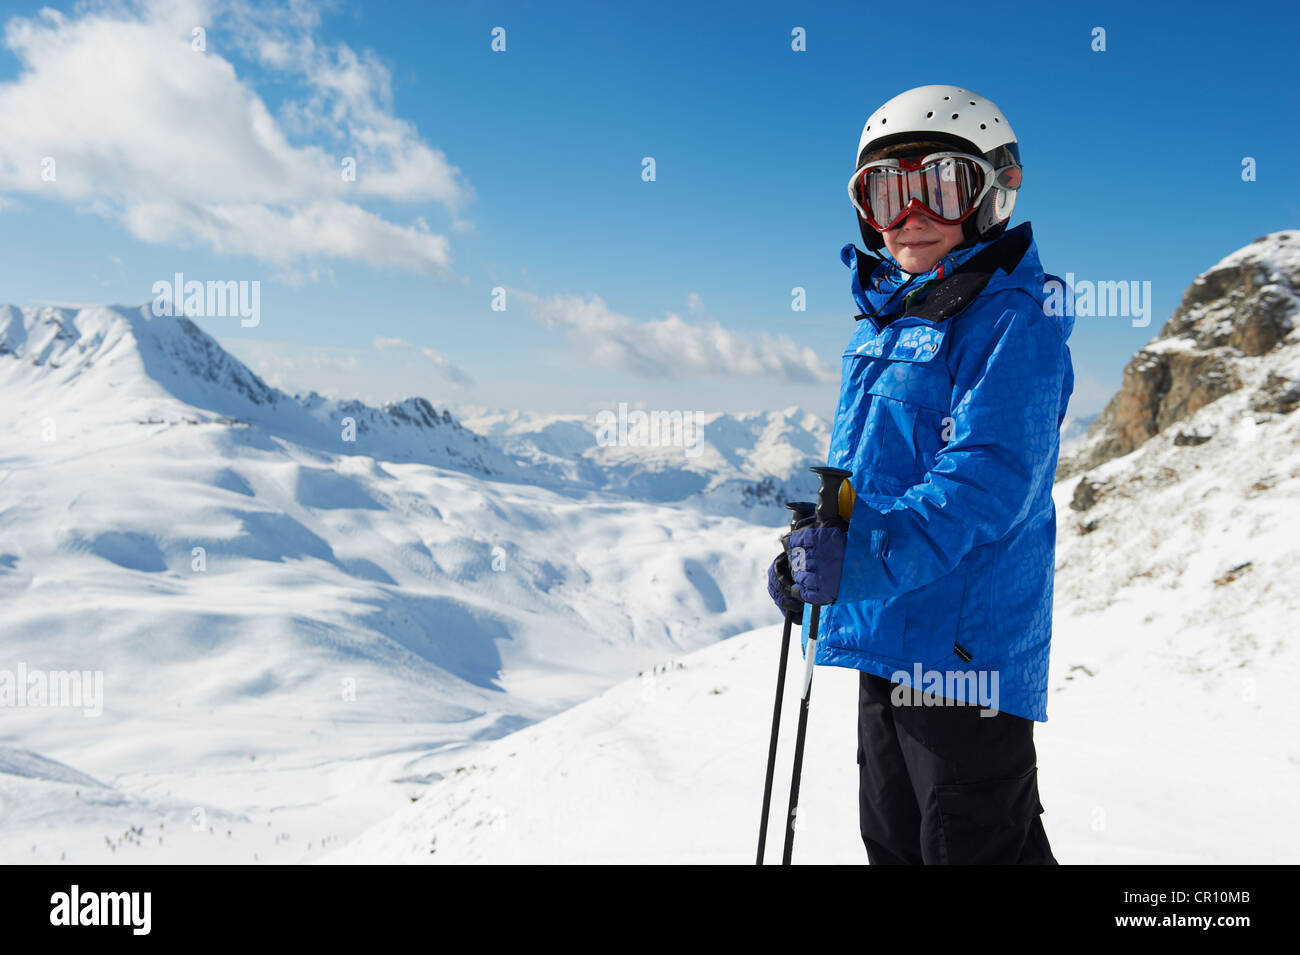 Junge im Ski auf verschneite Berggipfel Stockfoto